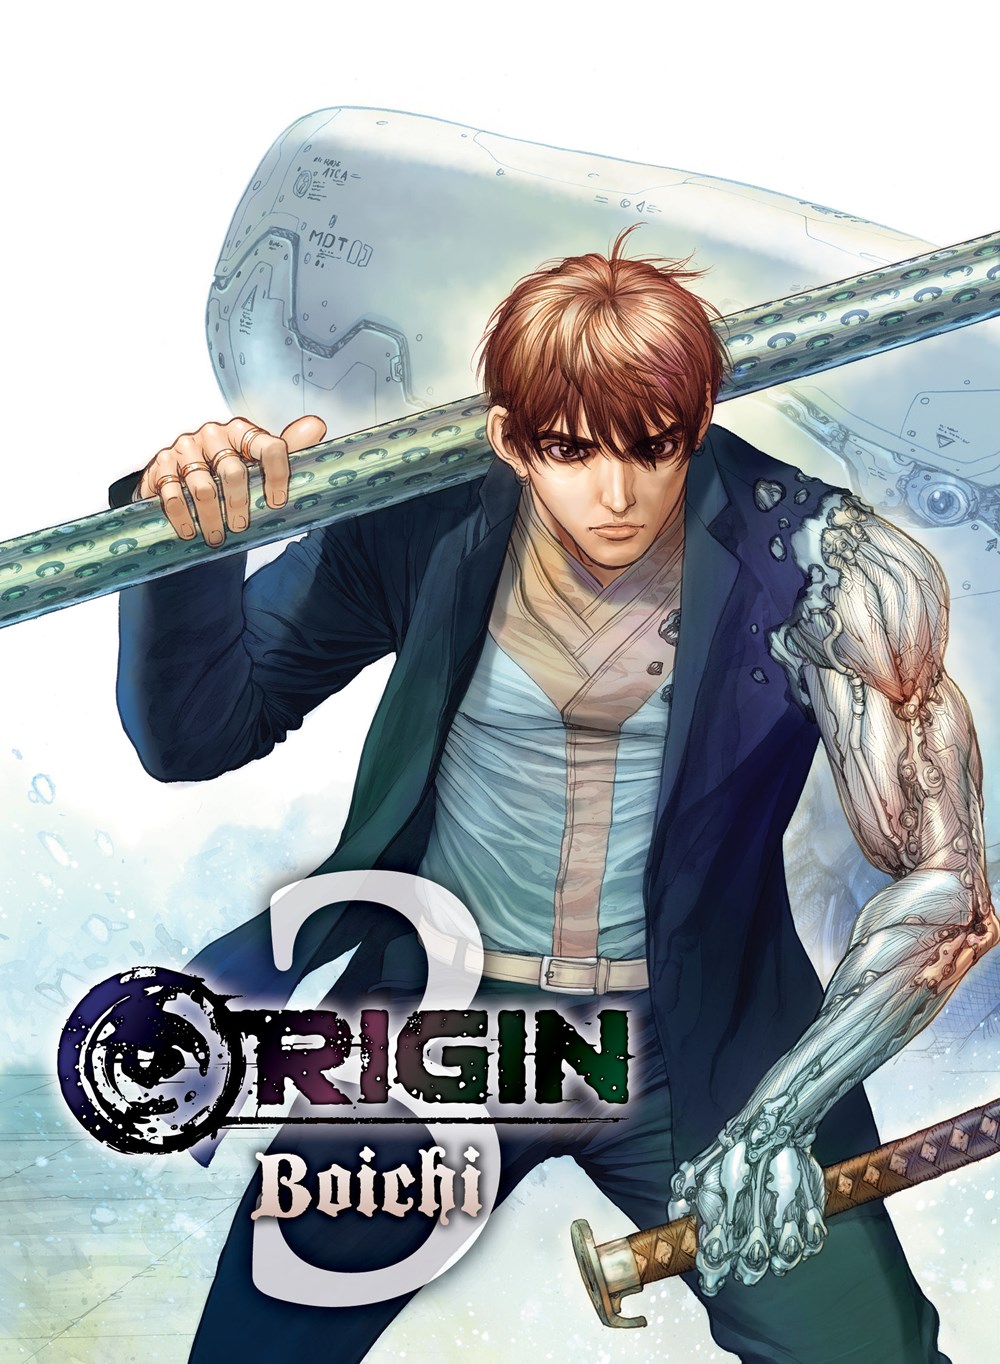 Origin Store – Origin